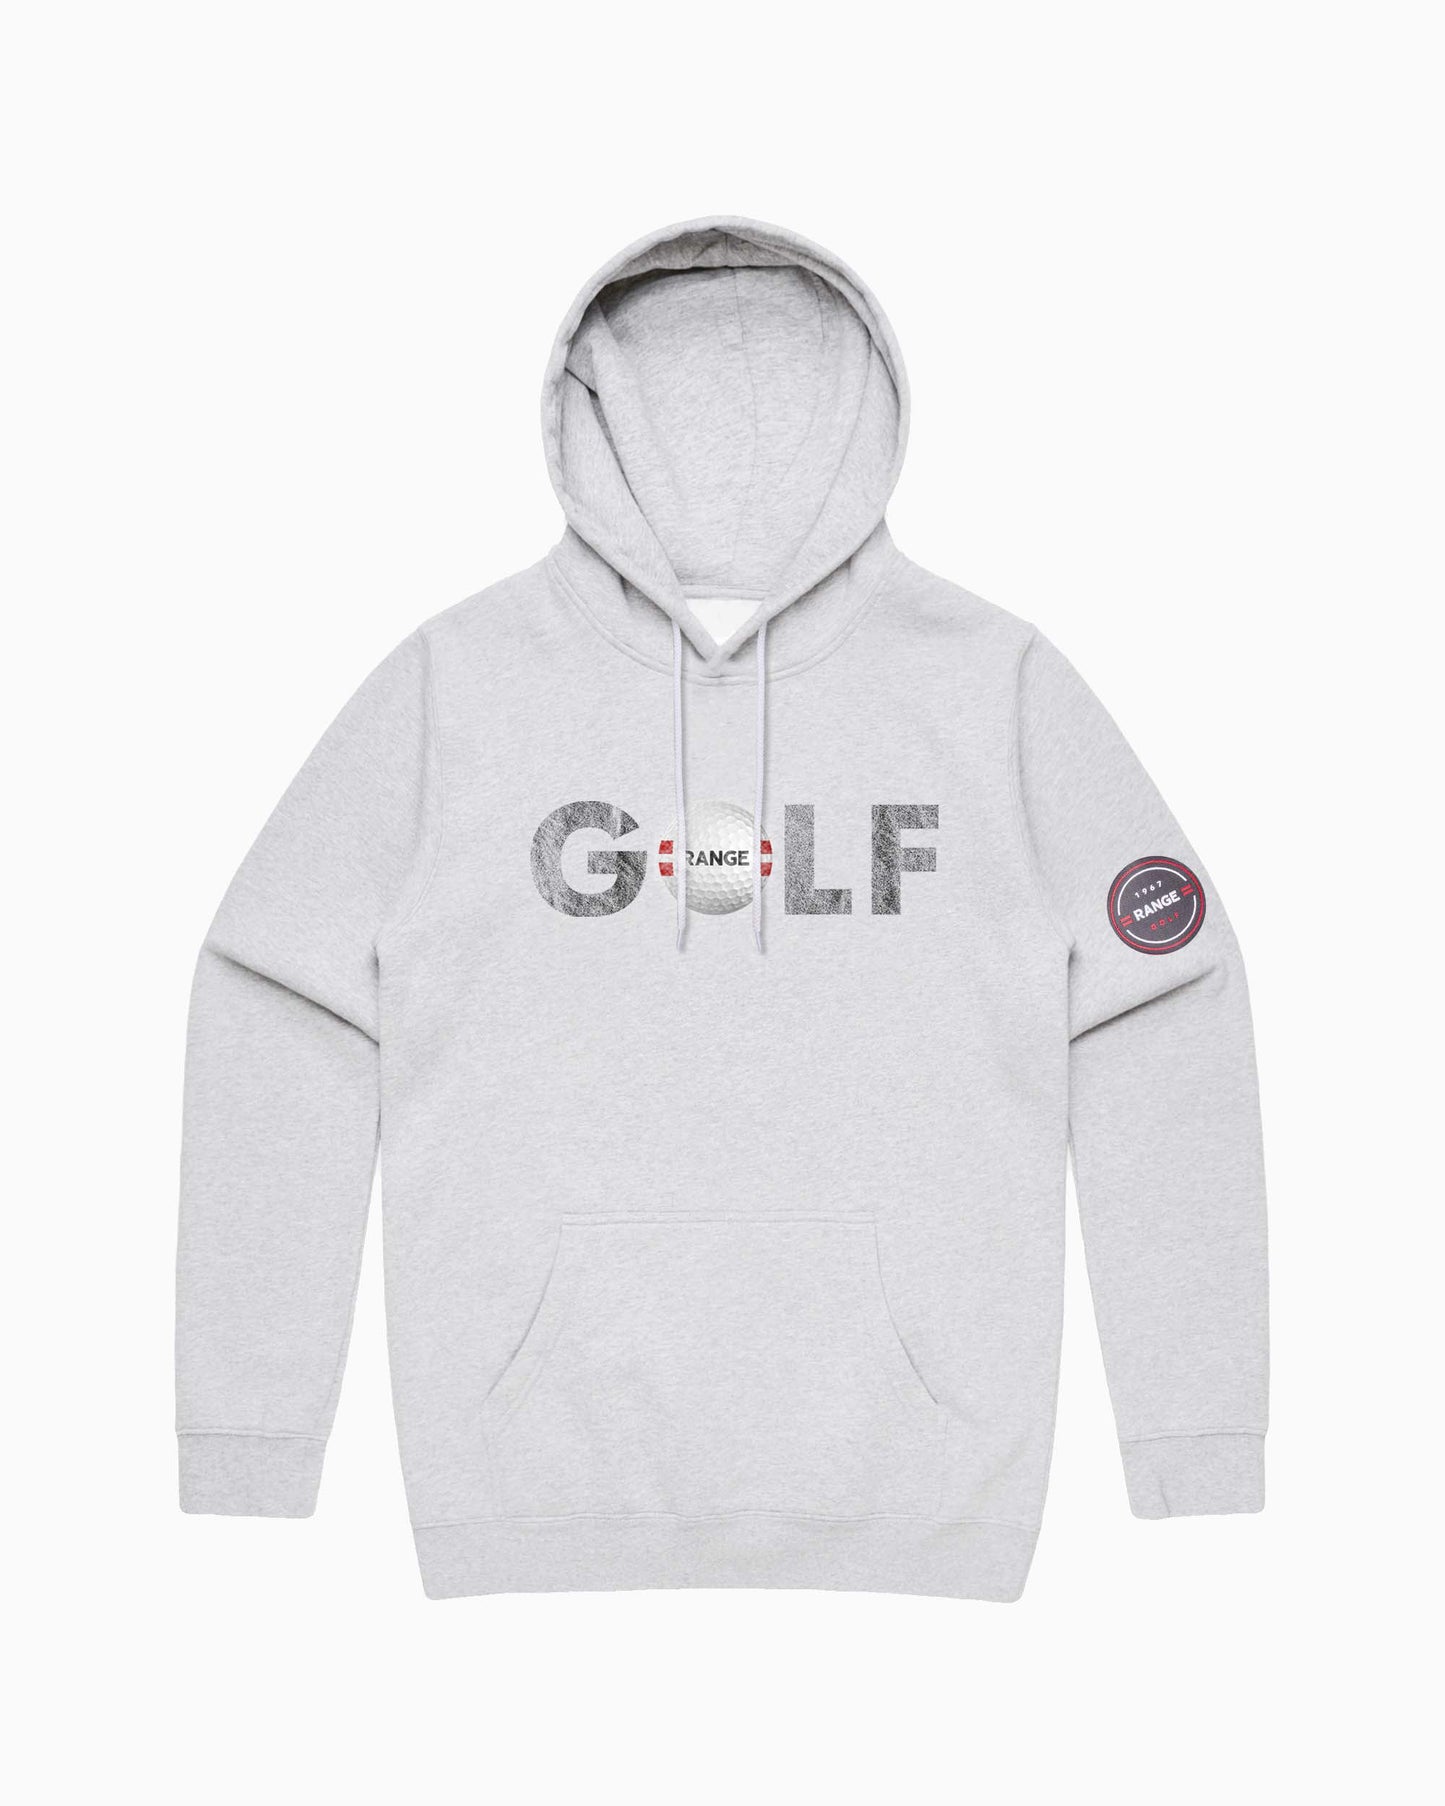 =RANGE= GOLF | The OG hoodie